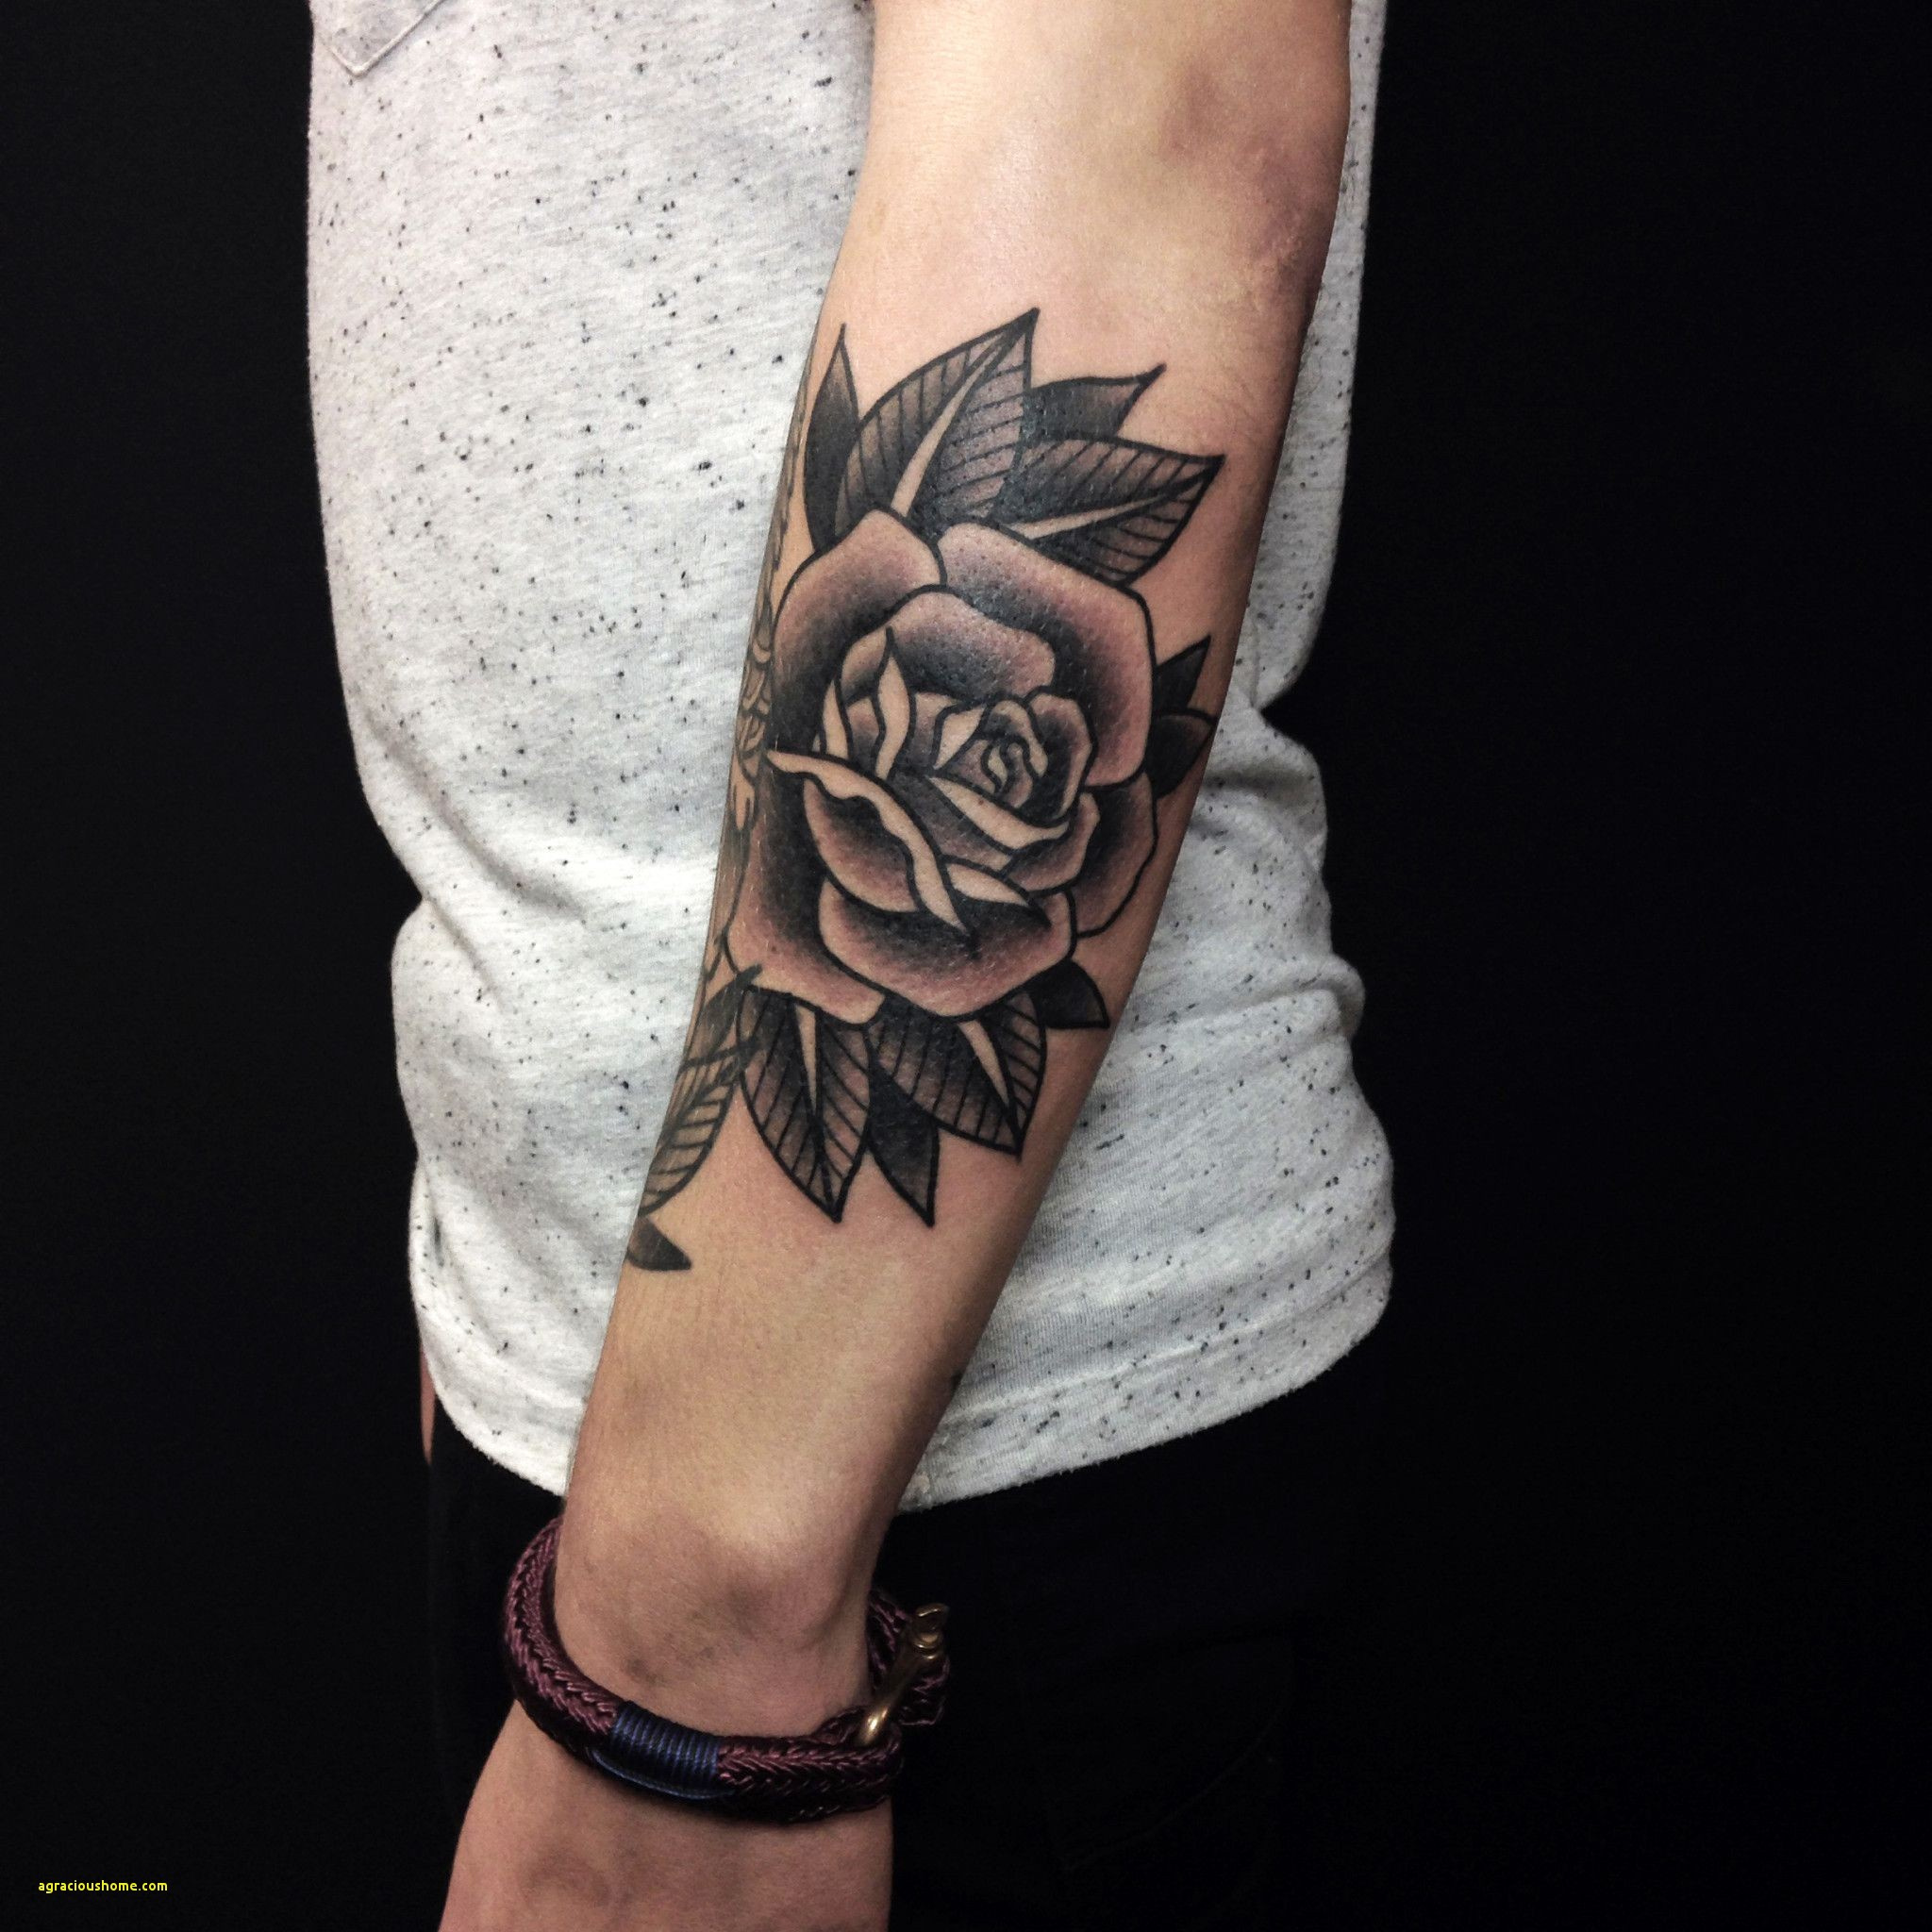 Мужские тату розы на руке - эскизы, значения татуировок с розами